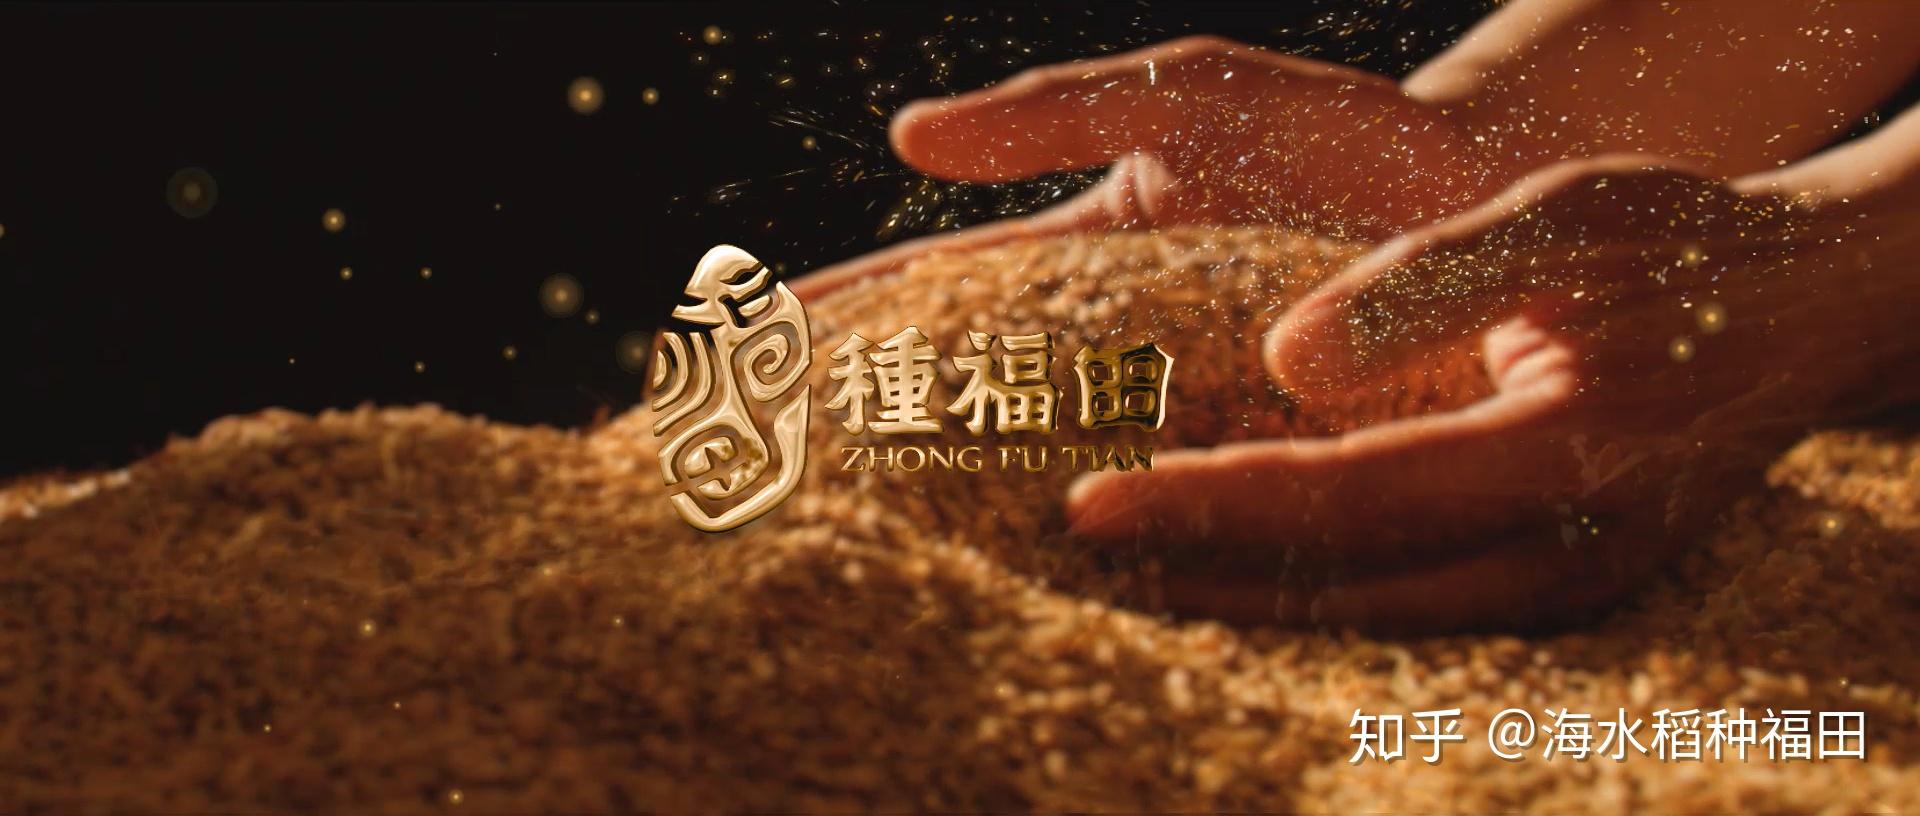 聚焦海水稻种福田唯一终端生态品牌登上农村大众报头版头条